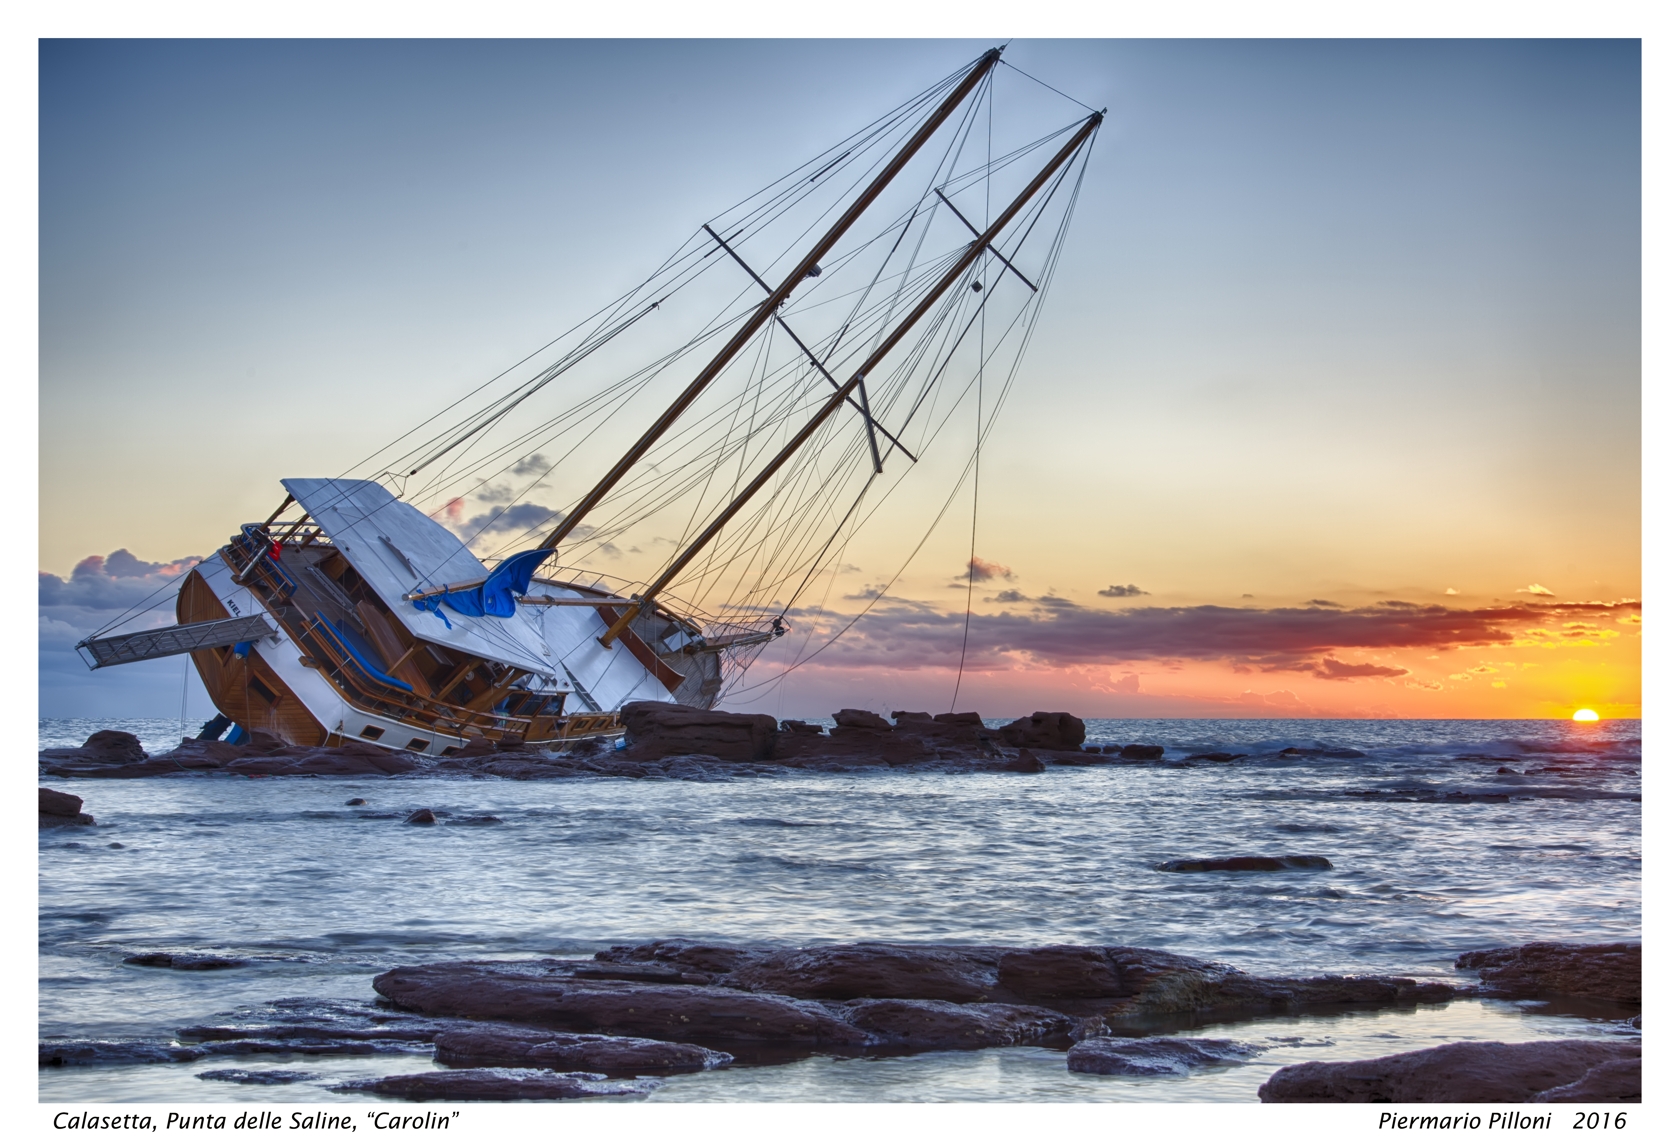 Calasetta, shipwreck "Carolin"...